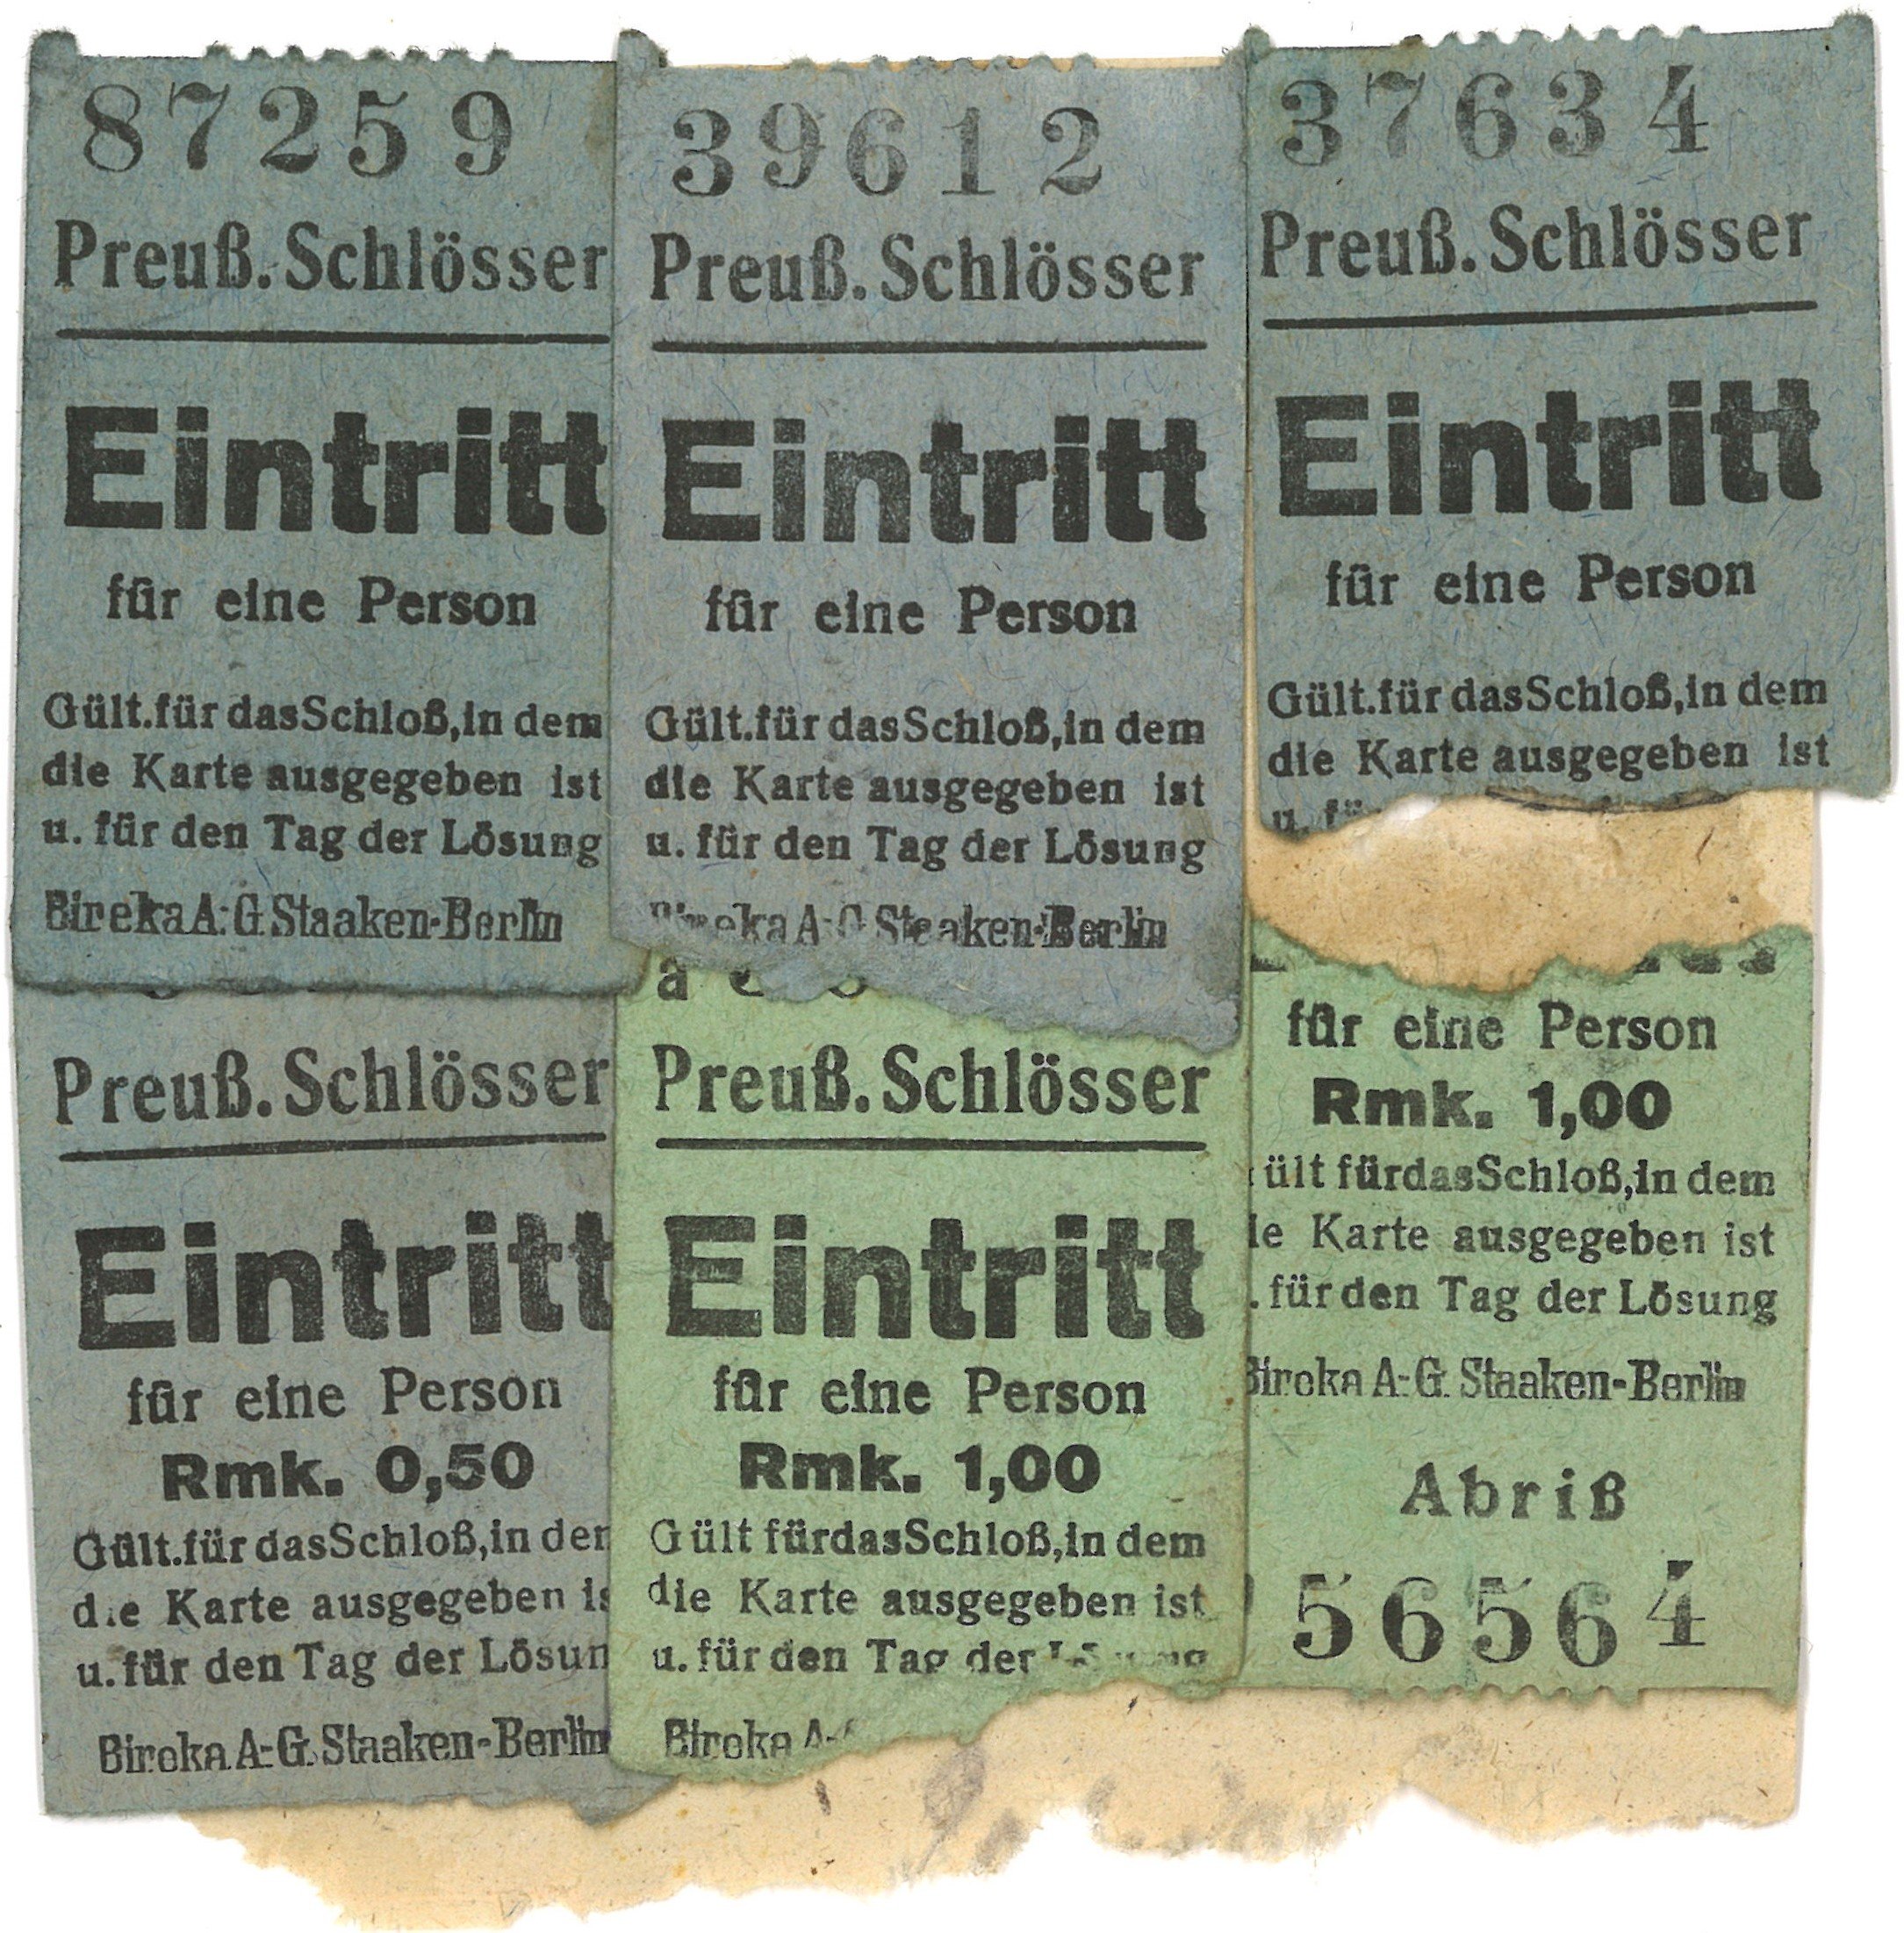 Berlin und Potsdam: Preußische Schlösser (Landesgeschichtliche Vereinigung für die Mark Brandenburg e.V., Archiv CC BY)